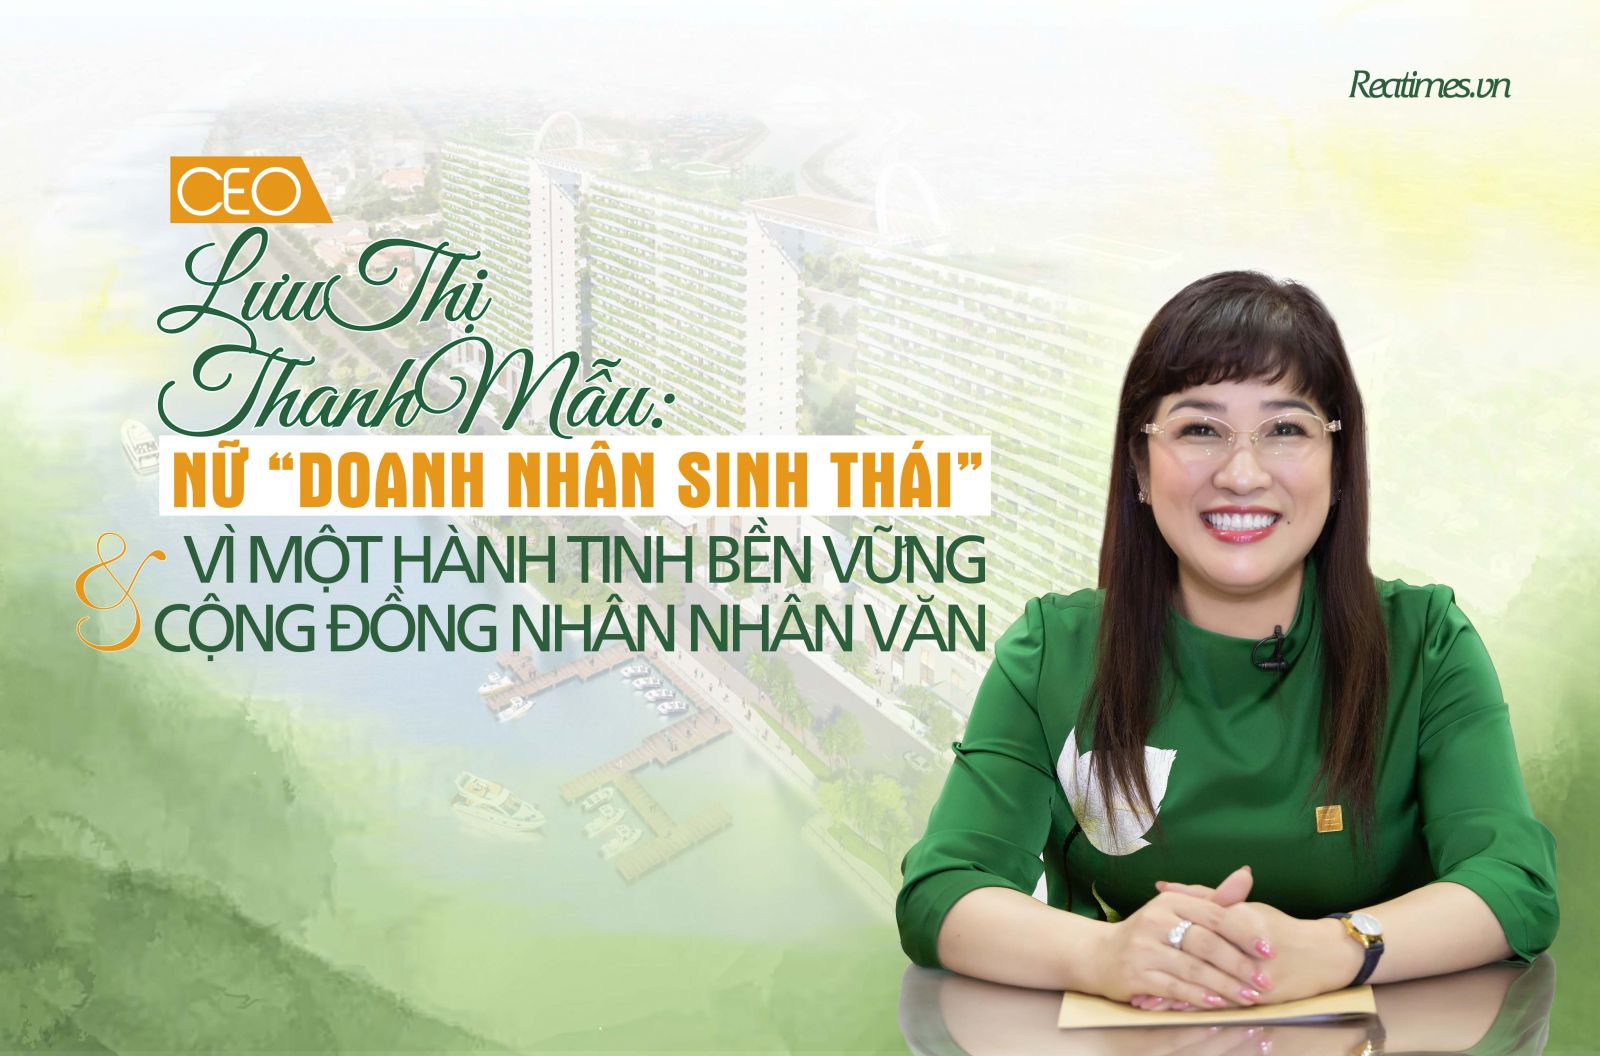 CEO Lưu Thị Thanh Mẫu: Nữ “Doanh nhân sinh thái” vì một Hành tinh bền vững và Cộng đồng nhân nhân văn